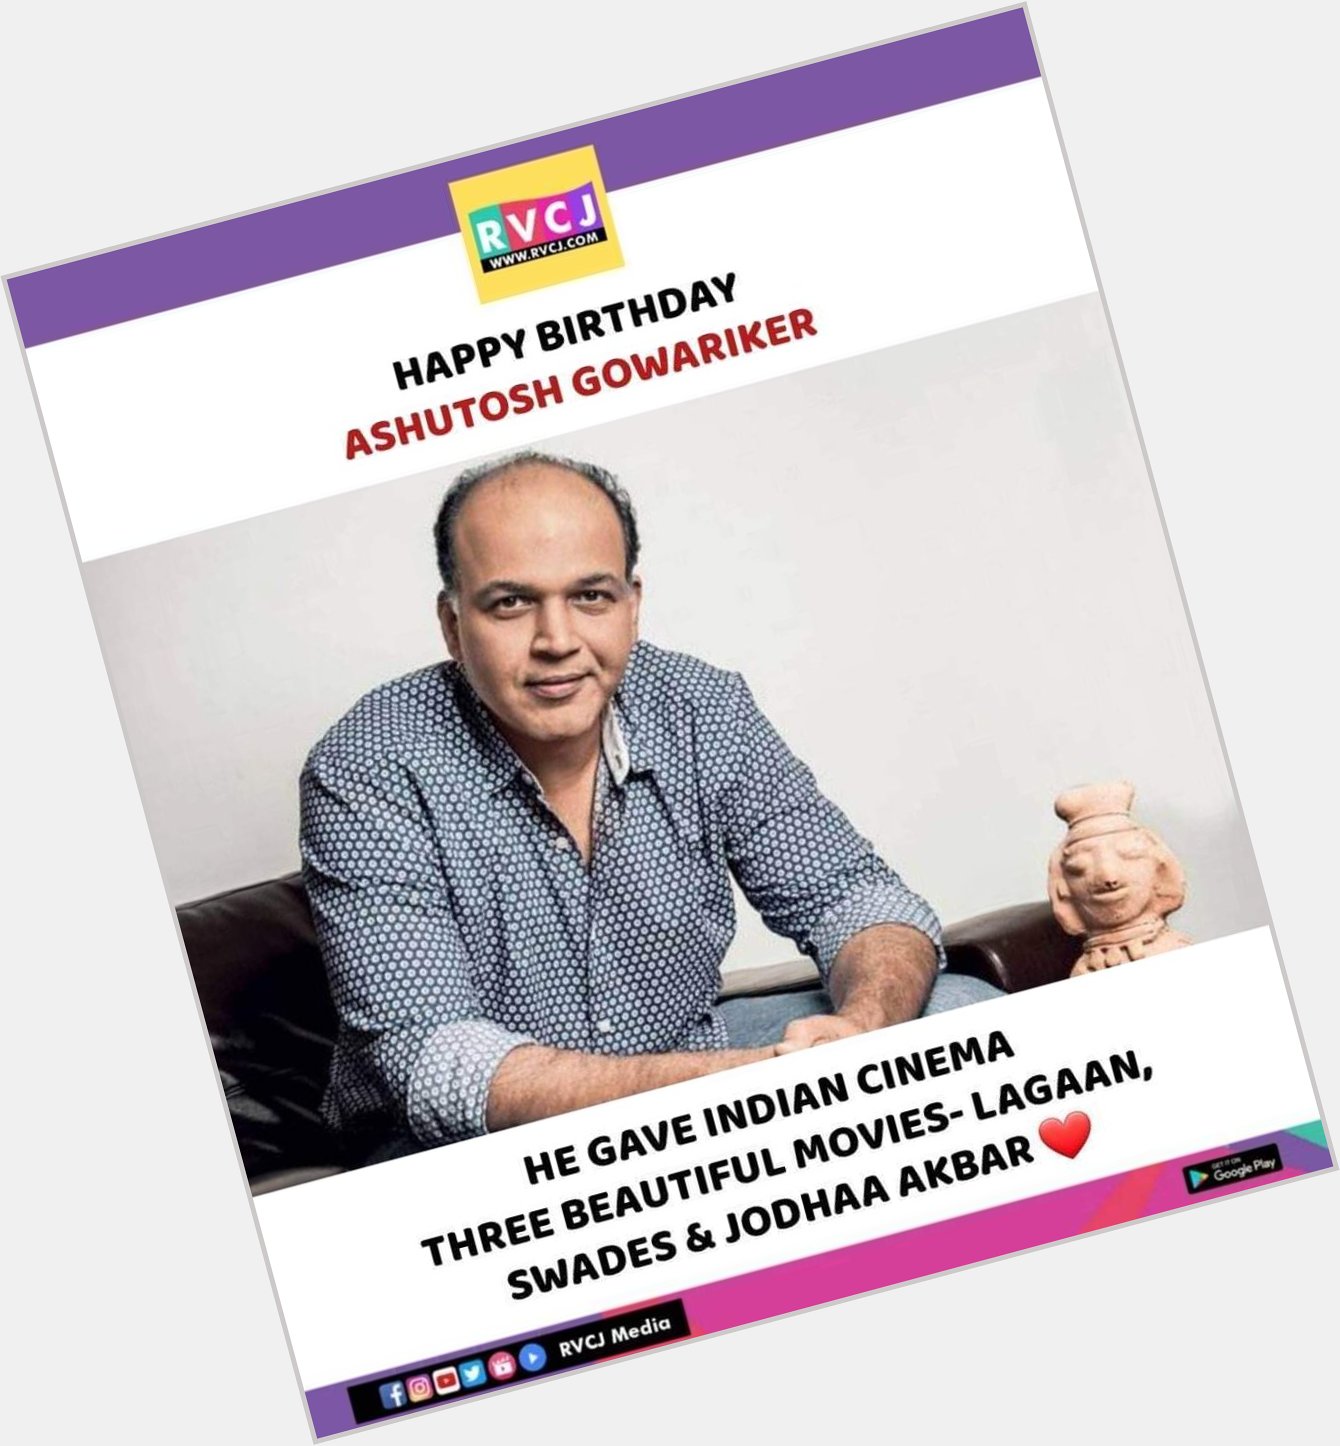  Happy Birthday Ashutosh Gowariker!   